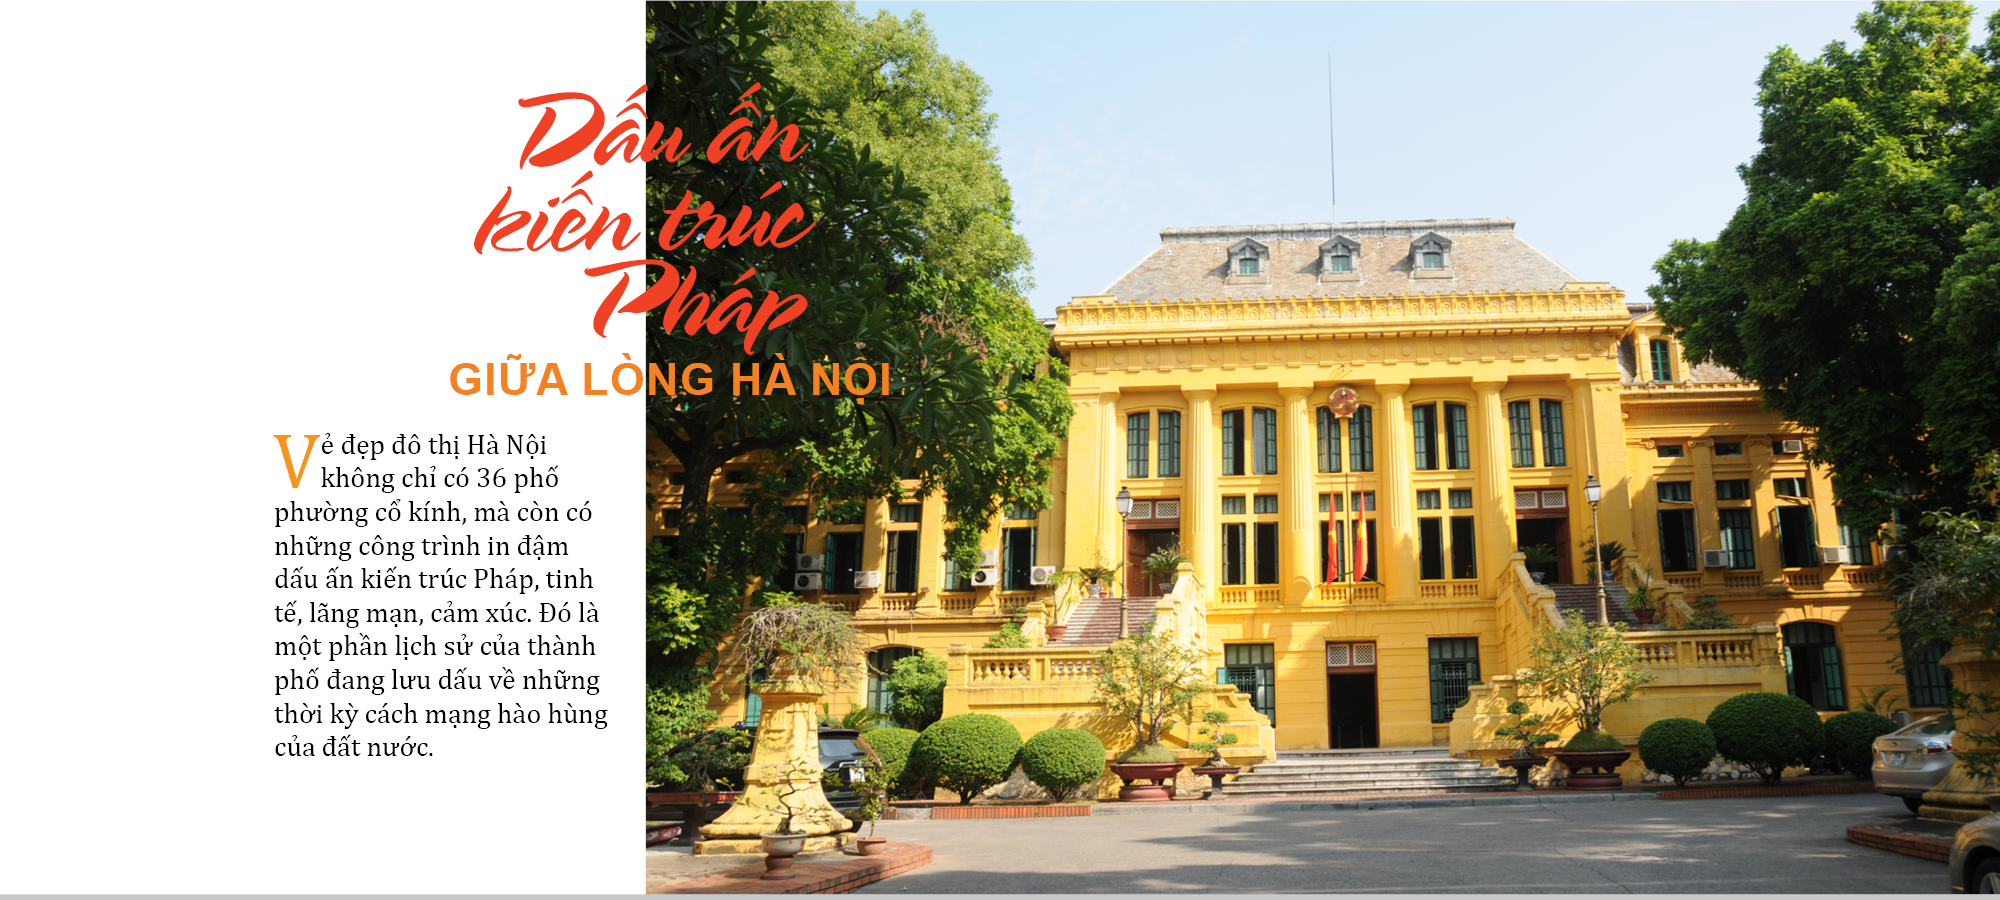 Người đặt nền móng phong cách thiết kế Đông Dương đầu tiên tại Việt Nam là kiến trúc sư Ernest Hebrard. Phong cách kiến trúc Đông Dương (Indochine) là sự kết hợp giữa phong cách Việt Nam và kiến trúc cổ điển Pháp.  